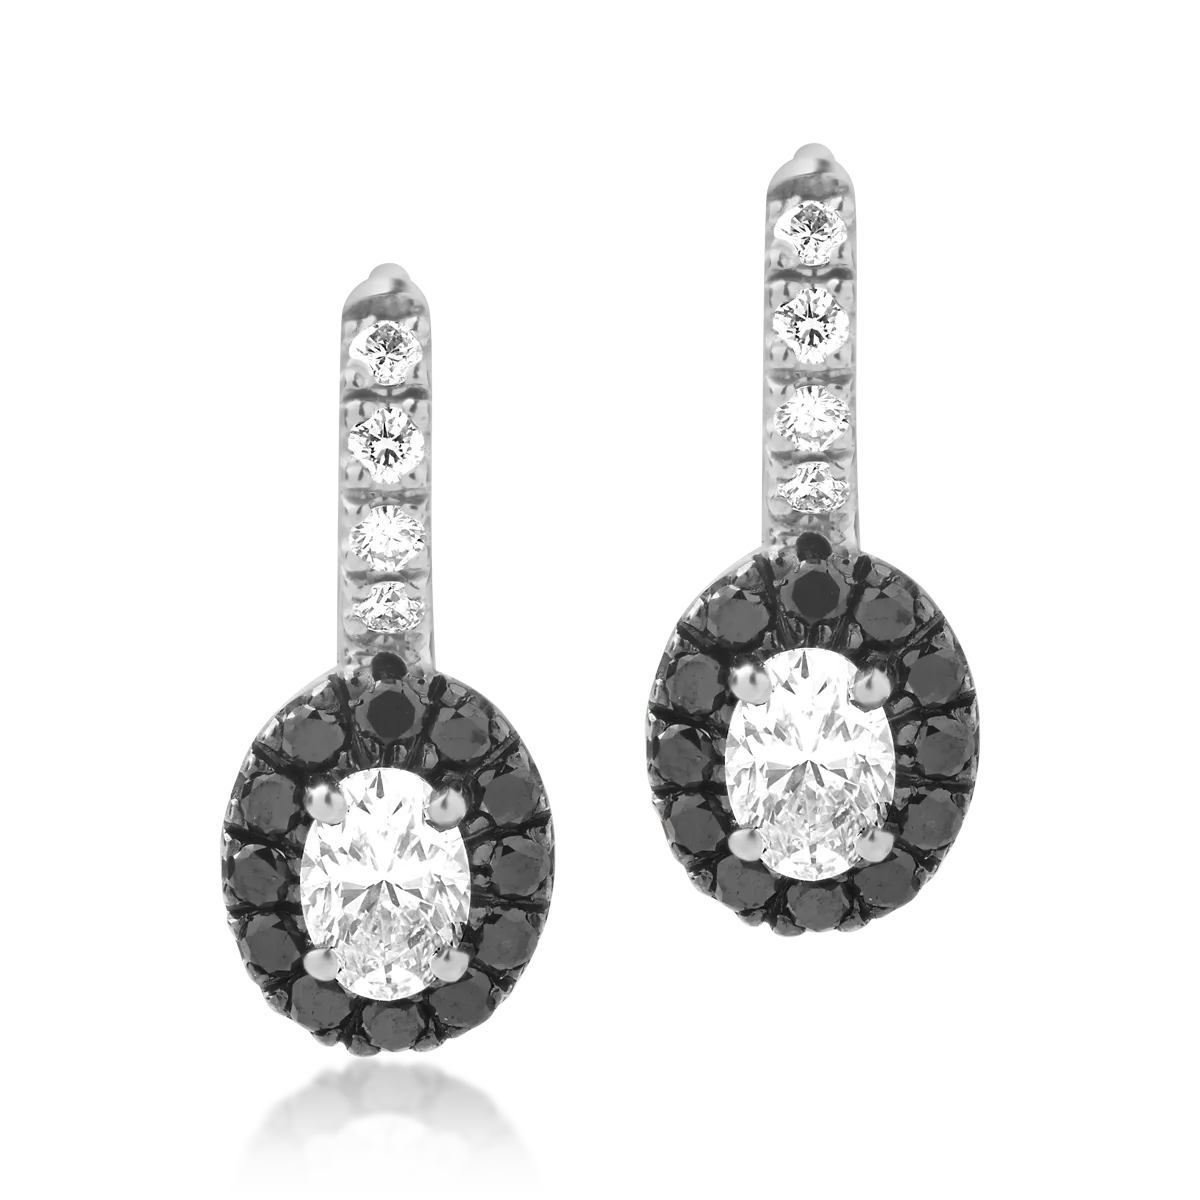 18 karátos fehérarany fülbevaló 0,74 karátos tiszta gyémántokkal és 0,32 karátos fekete gyémántokkal